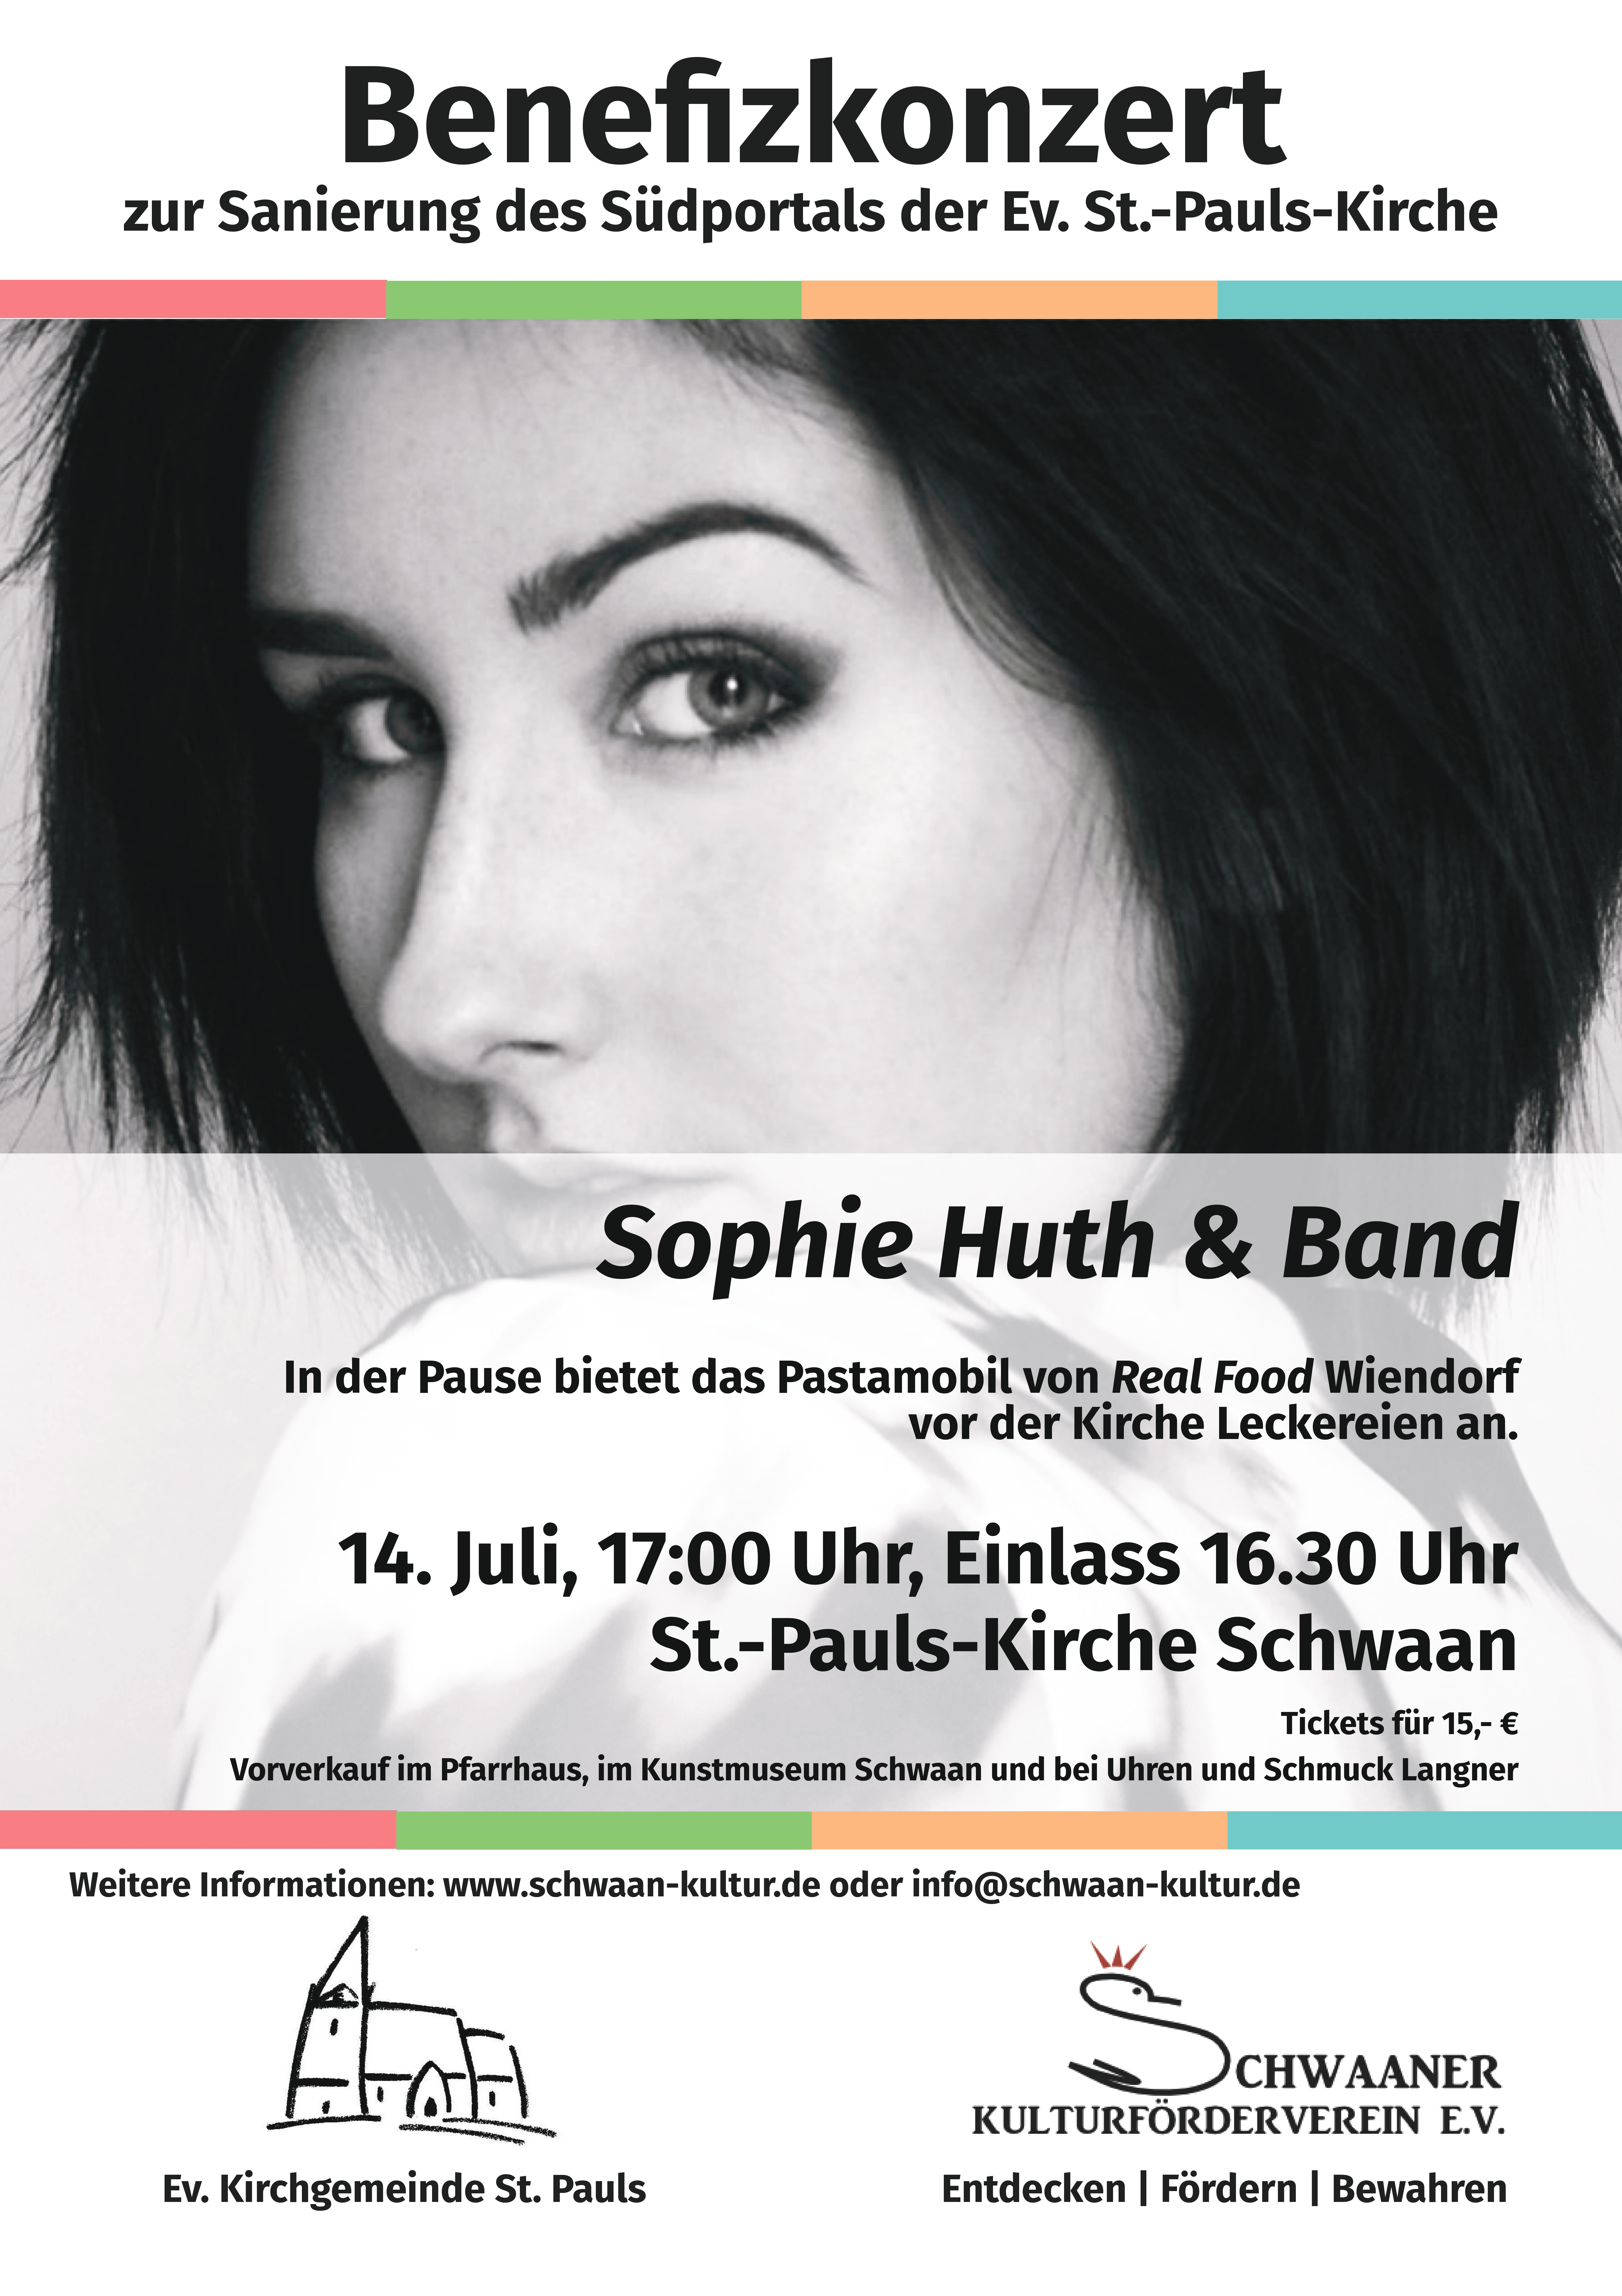 Sommerkonzert mit Sophie Huth & Band